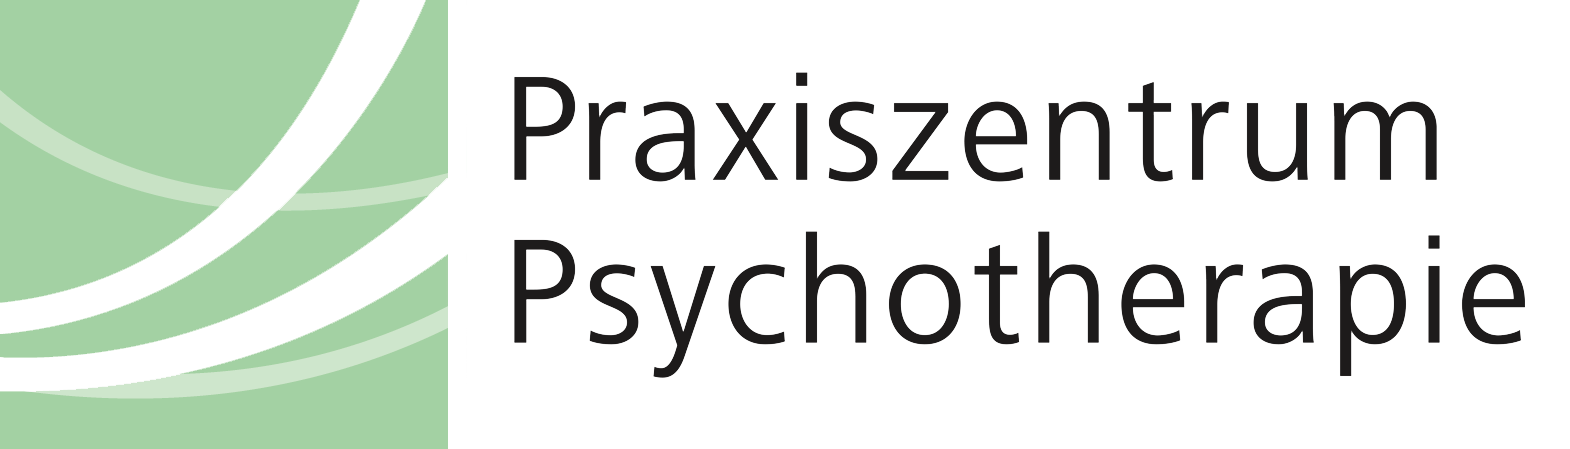 Praxiszentrum Psychotherapie Dipl.-Psych. Friederike Echtler-Geist